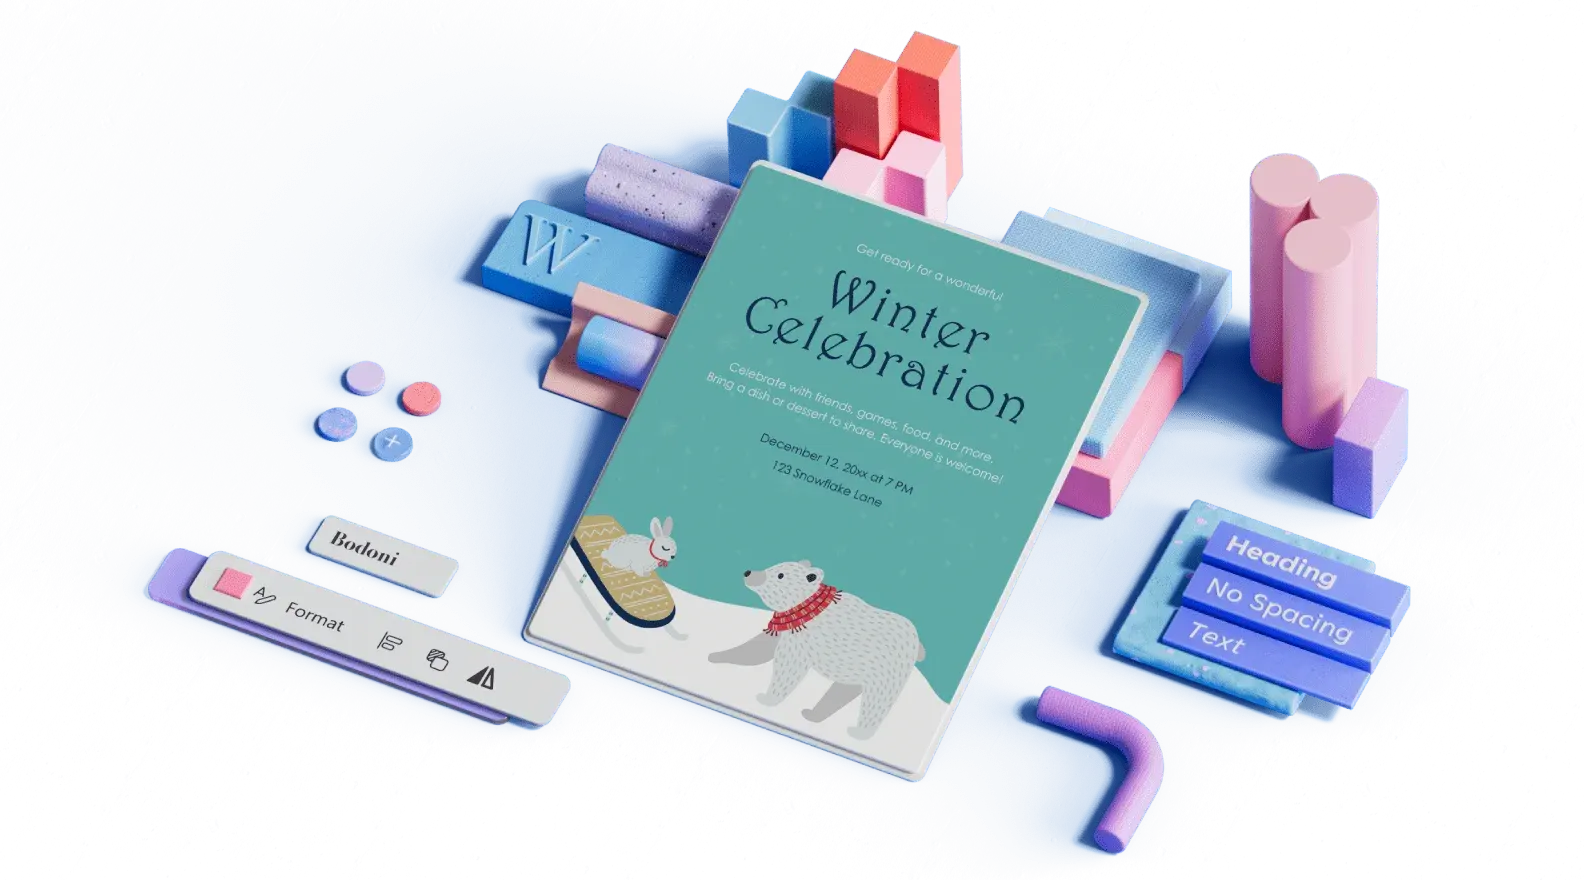 Skabelon til annoncering af vinterfejring omgivet af 3D-illustrerede designelementer